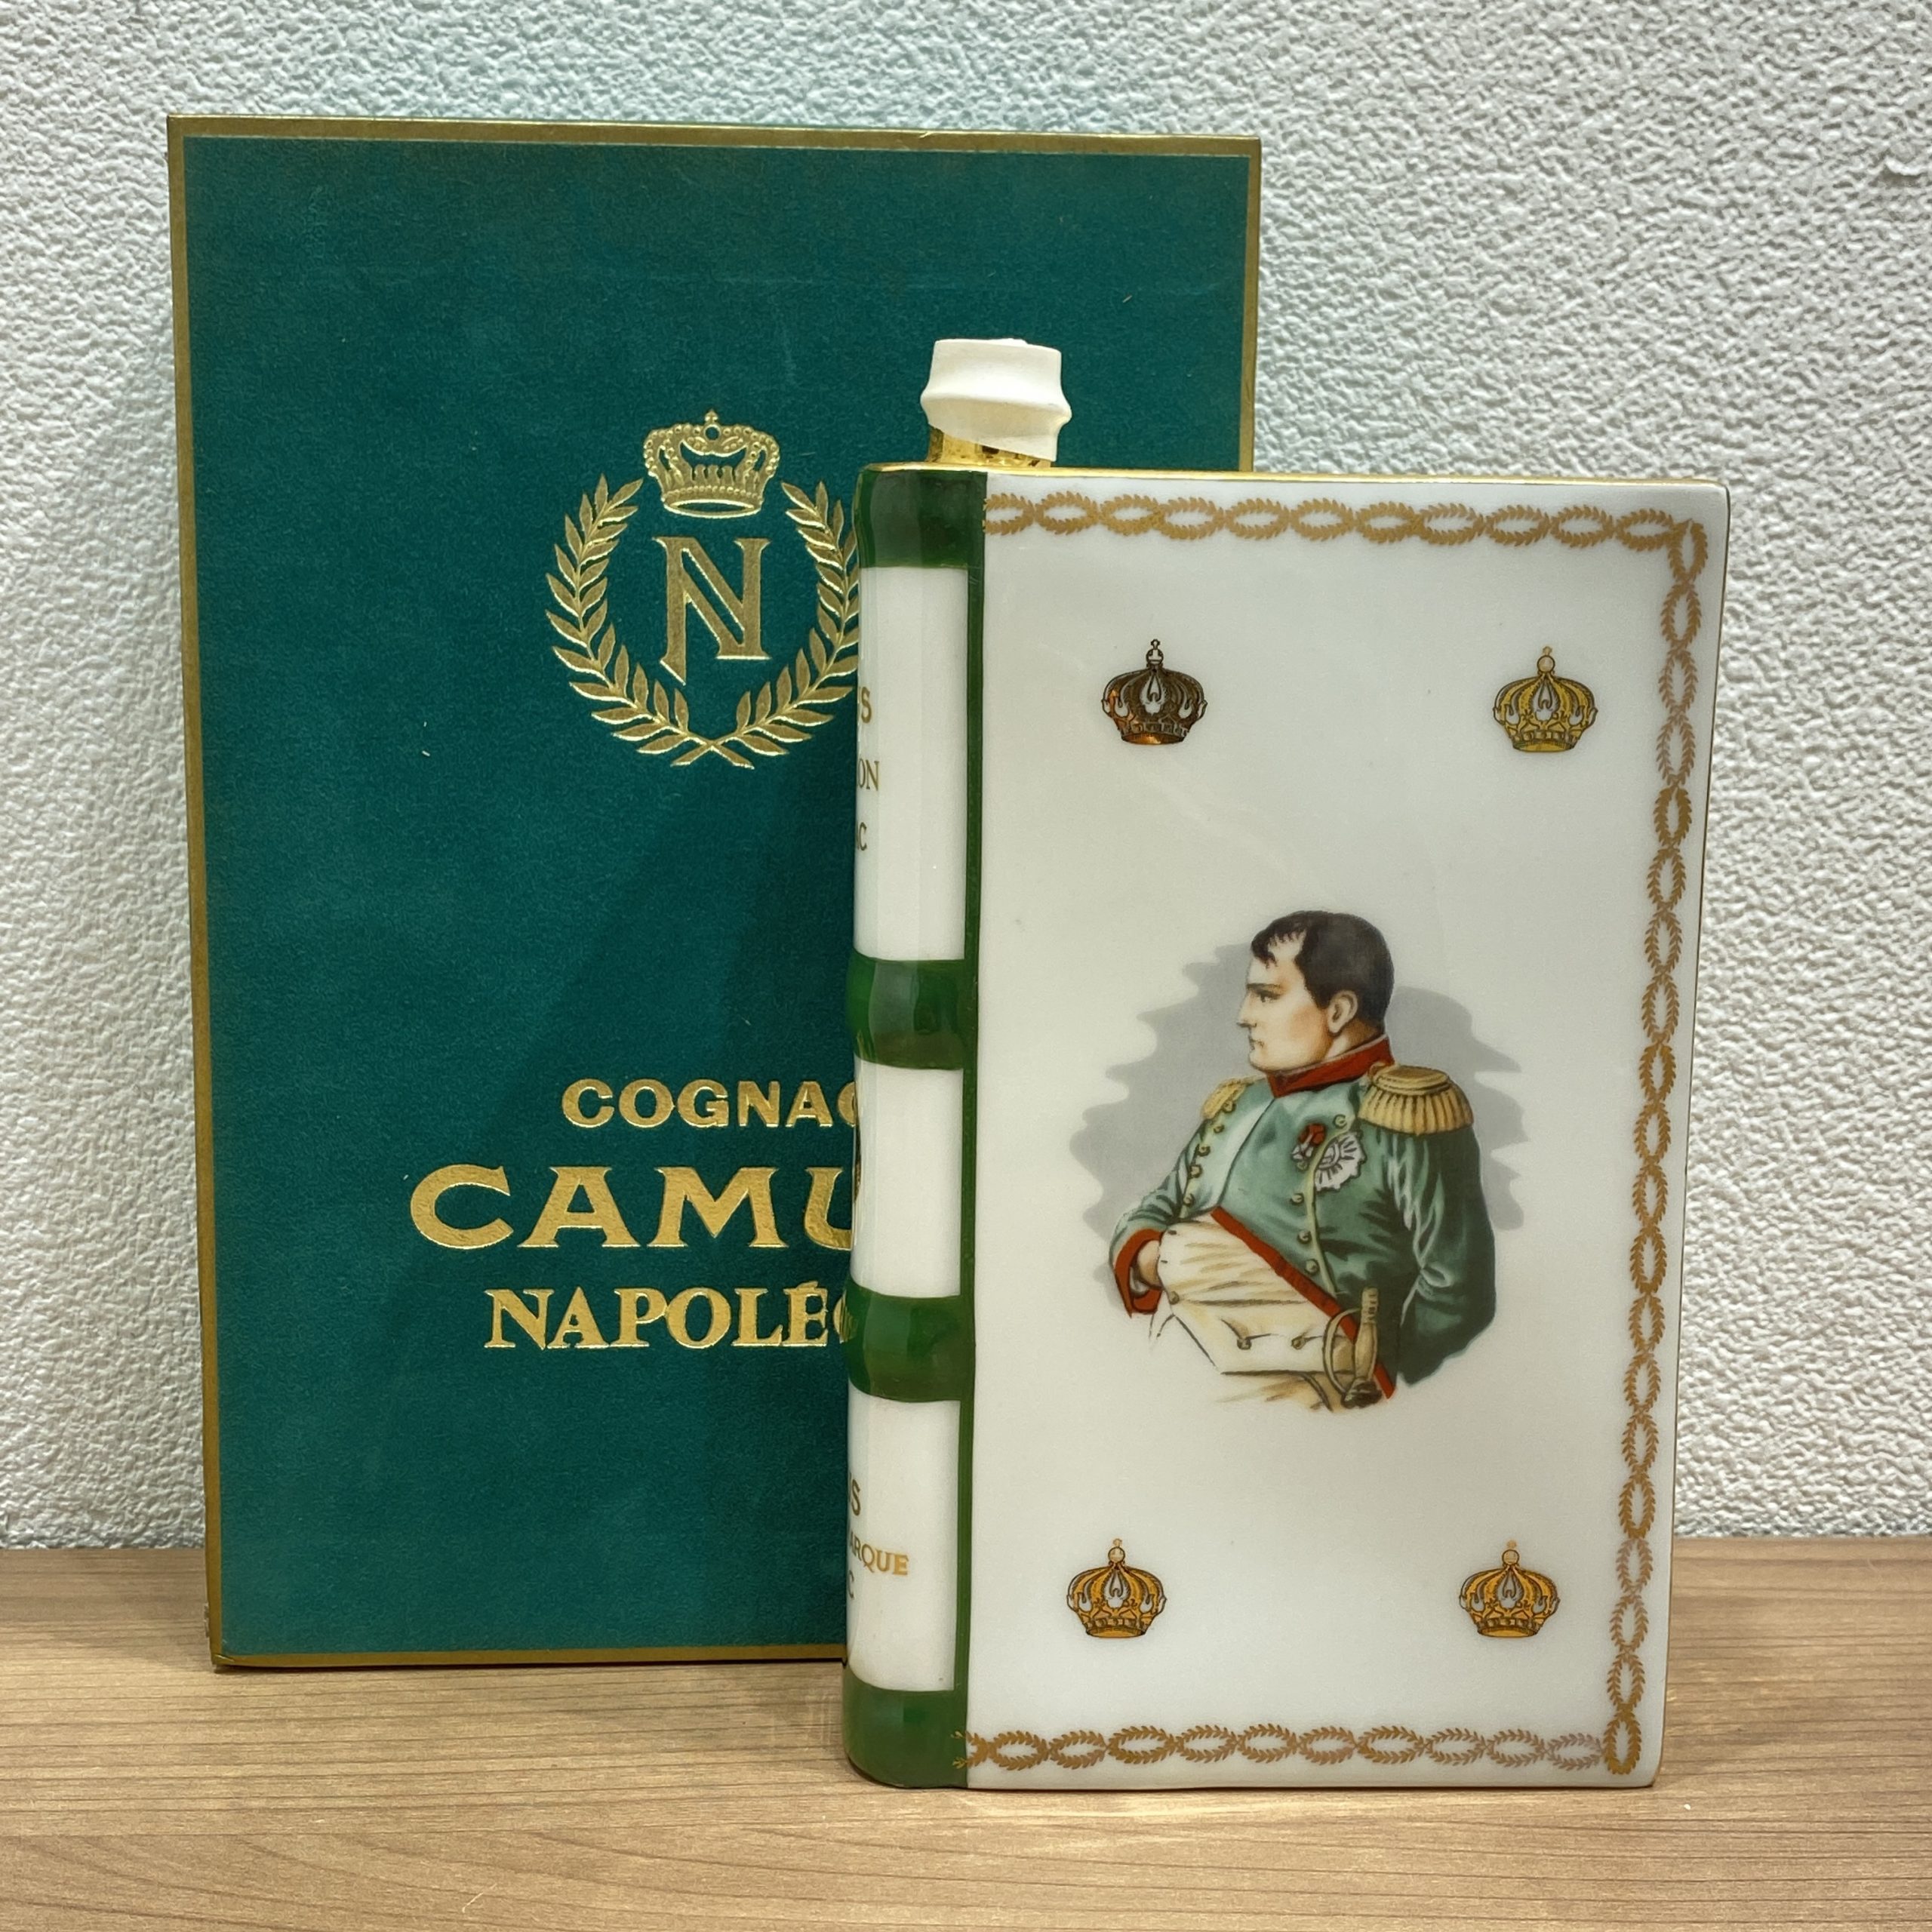 【CAMUS/カミュ】NAPOLEON/ナポレオン Book/ブック ブランデー/コニャック 